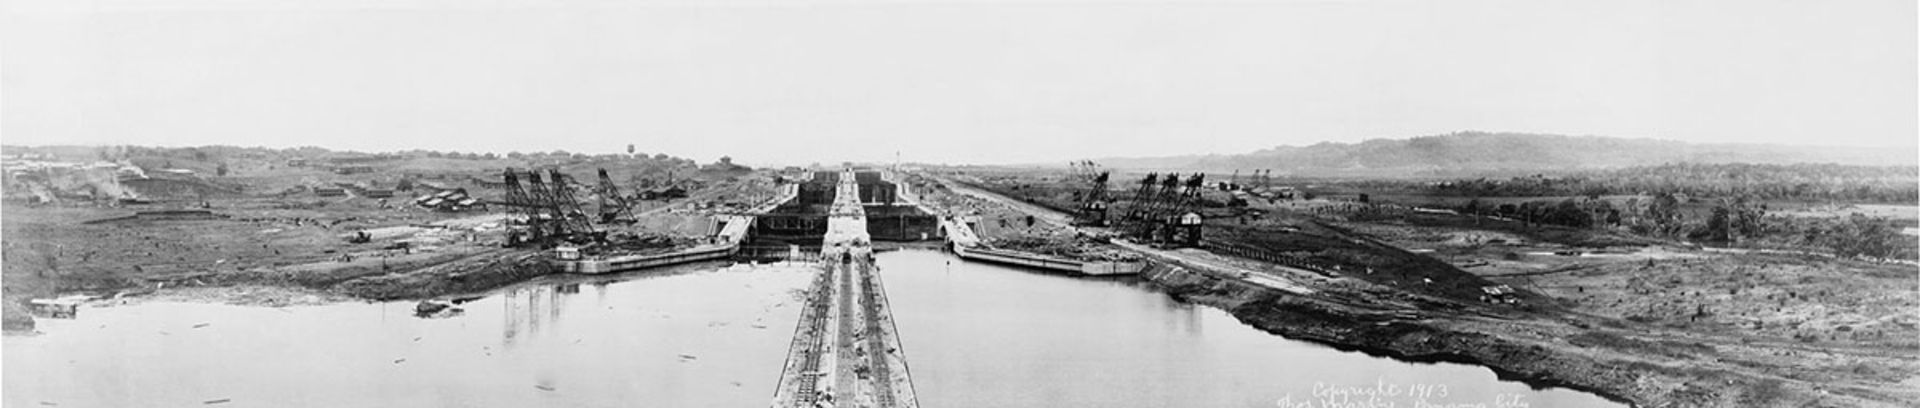 ساخت سد سلولی کانال پاناما / Panama Canal